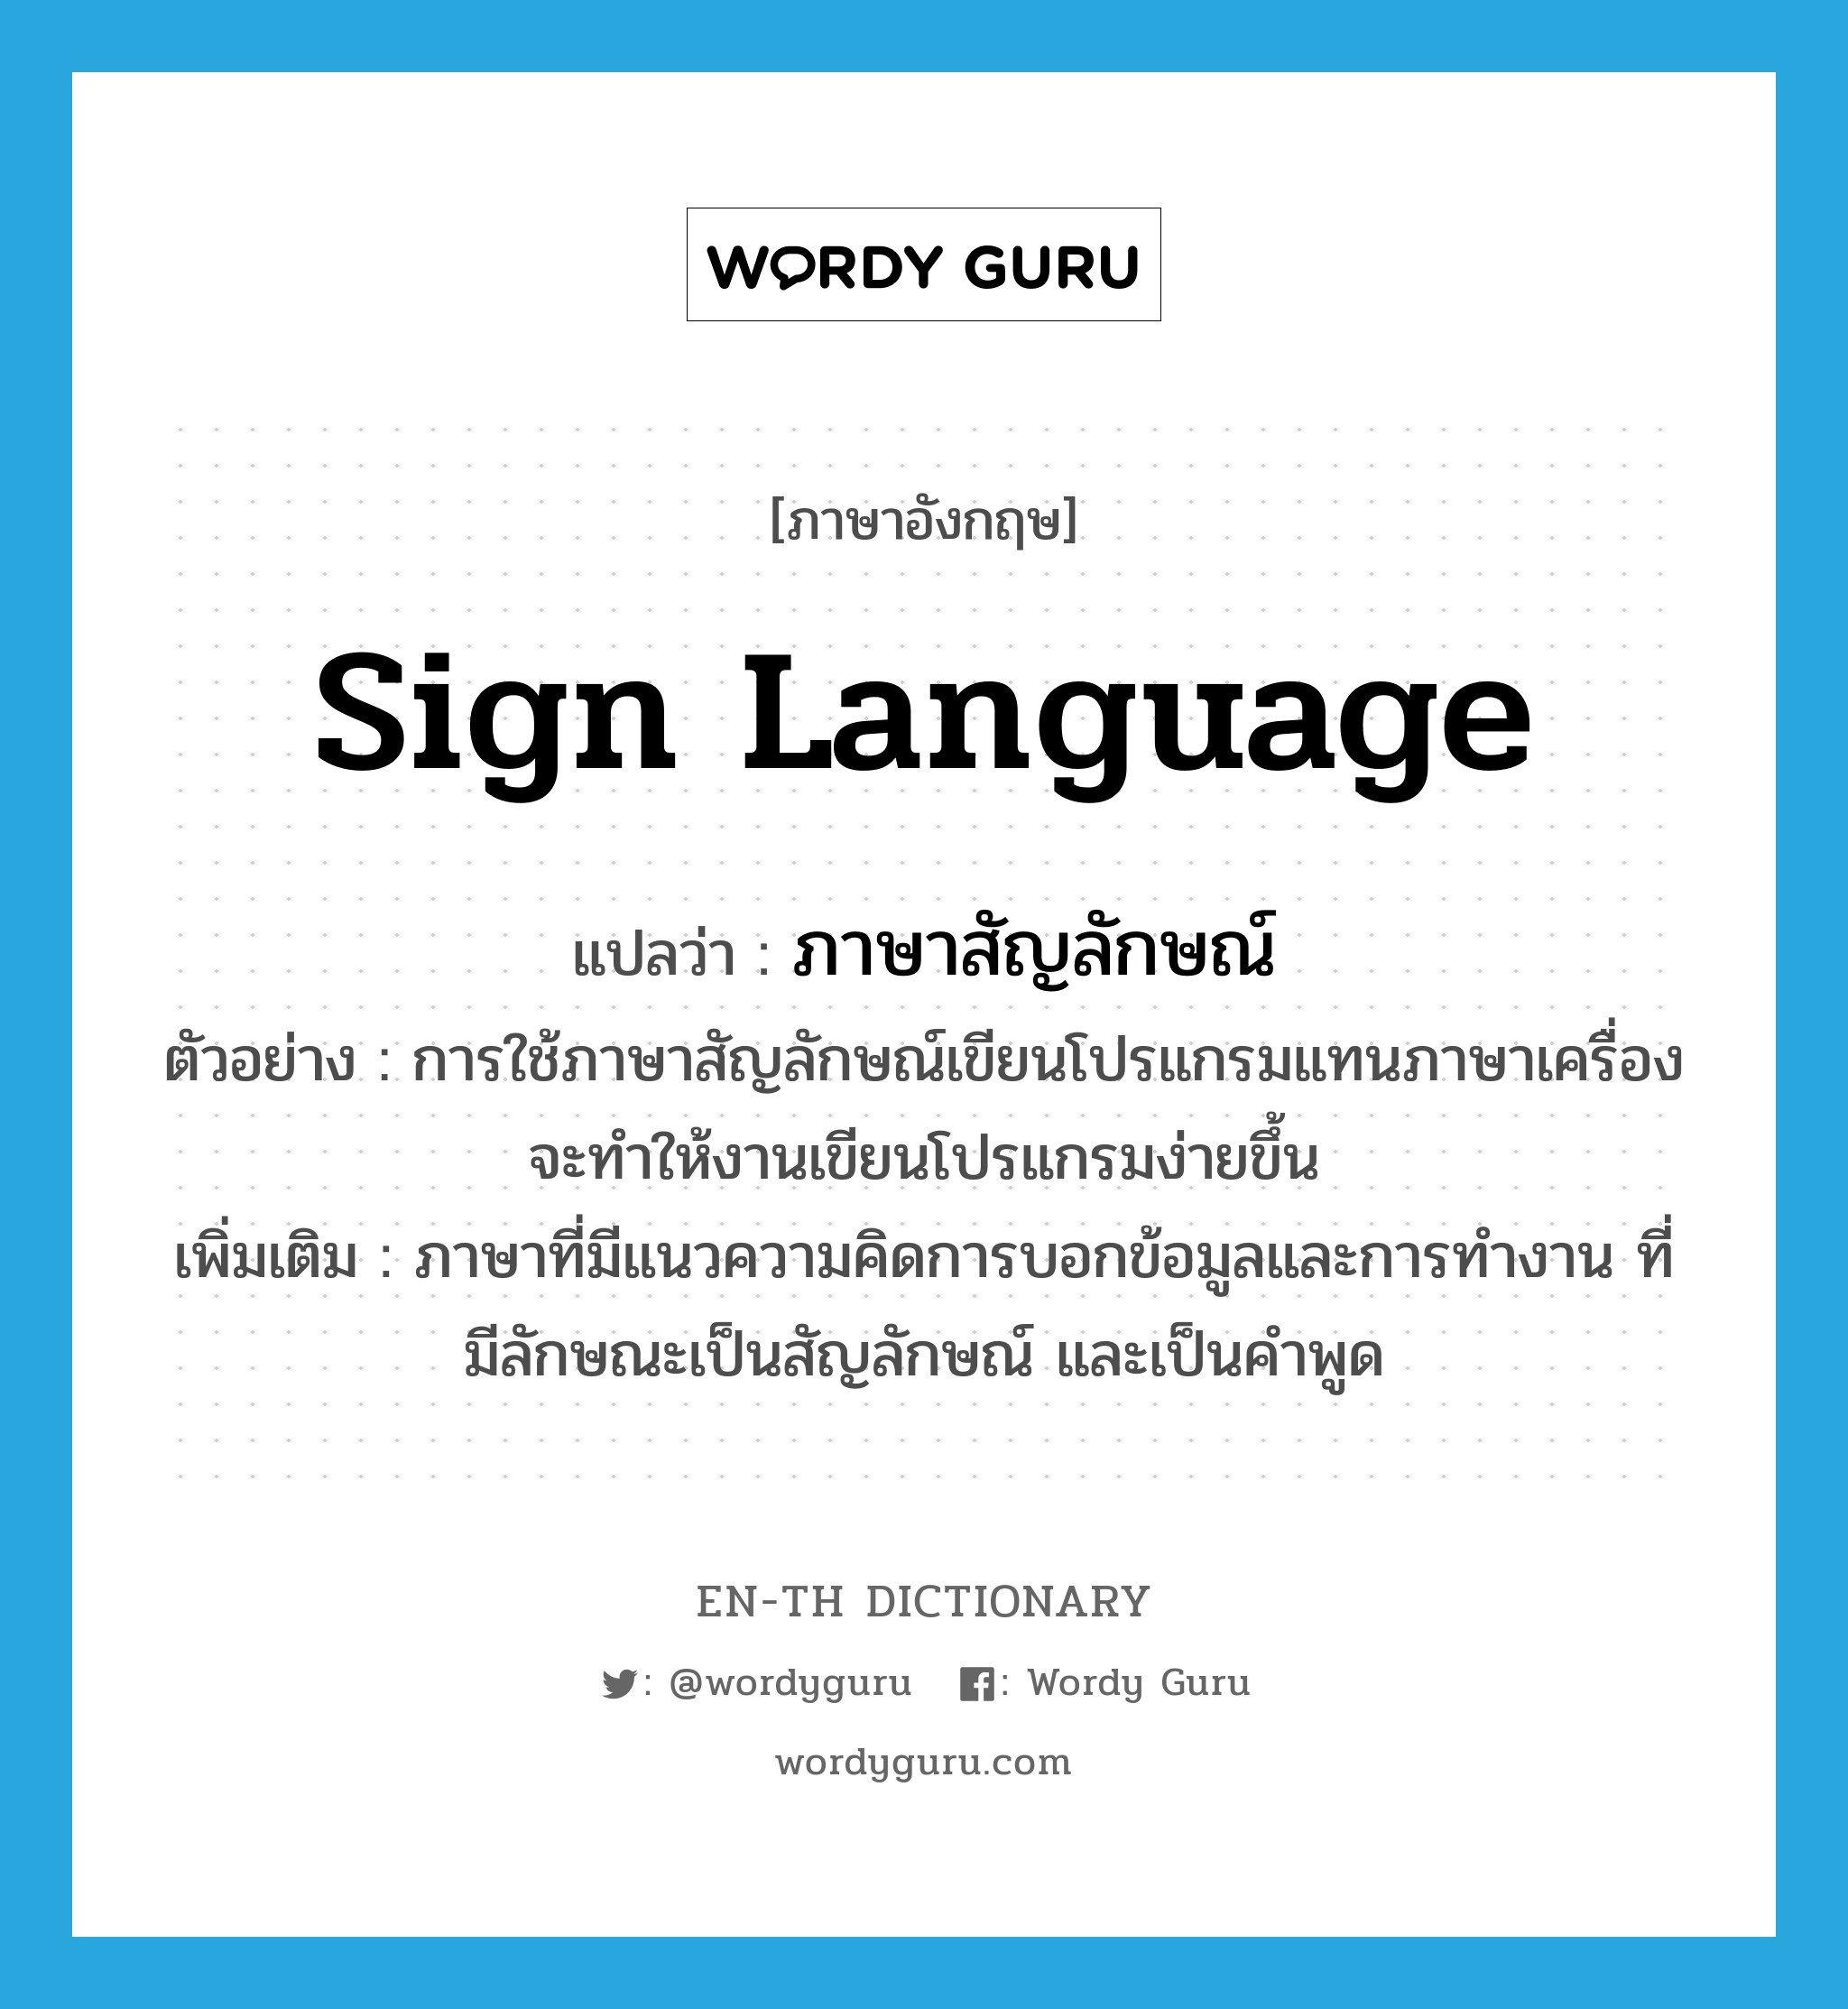 sign language แปลว่า?, คำศัพท์ภาษาอังกฤษ sign language แปลว่า ภาษาสัญลักษณ์ ประเภท N ตัวอย่าง การใช้ภาษาสัญลักษณ์เขียนโปรแกรมแทนภาษาเครื่องจะทำให้งานเขียนโปรแกรมง่ายขึ้น เพิ่มเติม ภาษาที่มีแนวความคิดการบอกข้อมูลและการทำงาน ที่มีลักษณะเป็นสัญลักษณ์ และเป็นคำพูด หมวด N